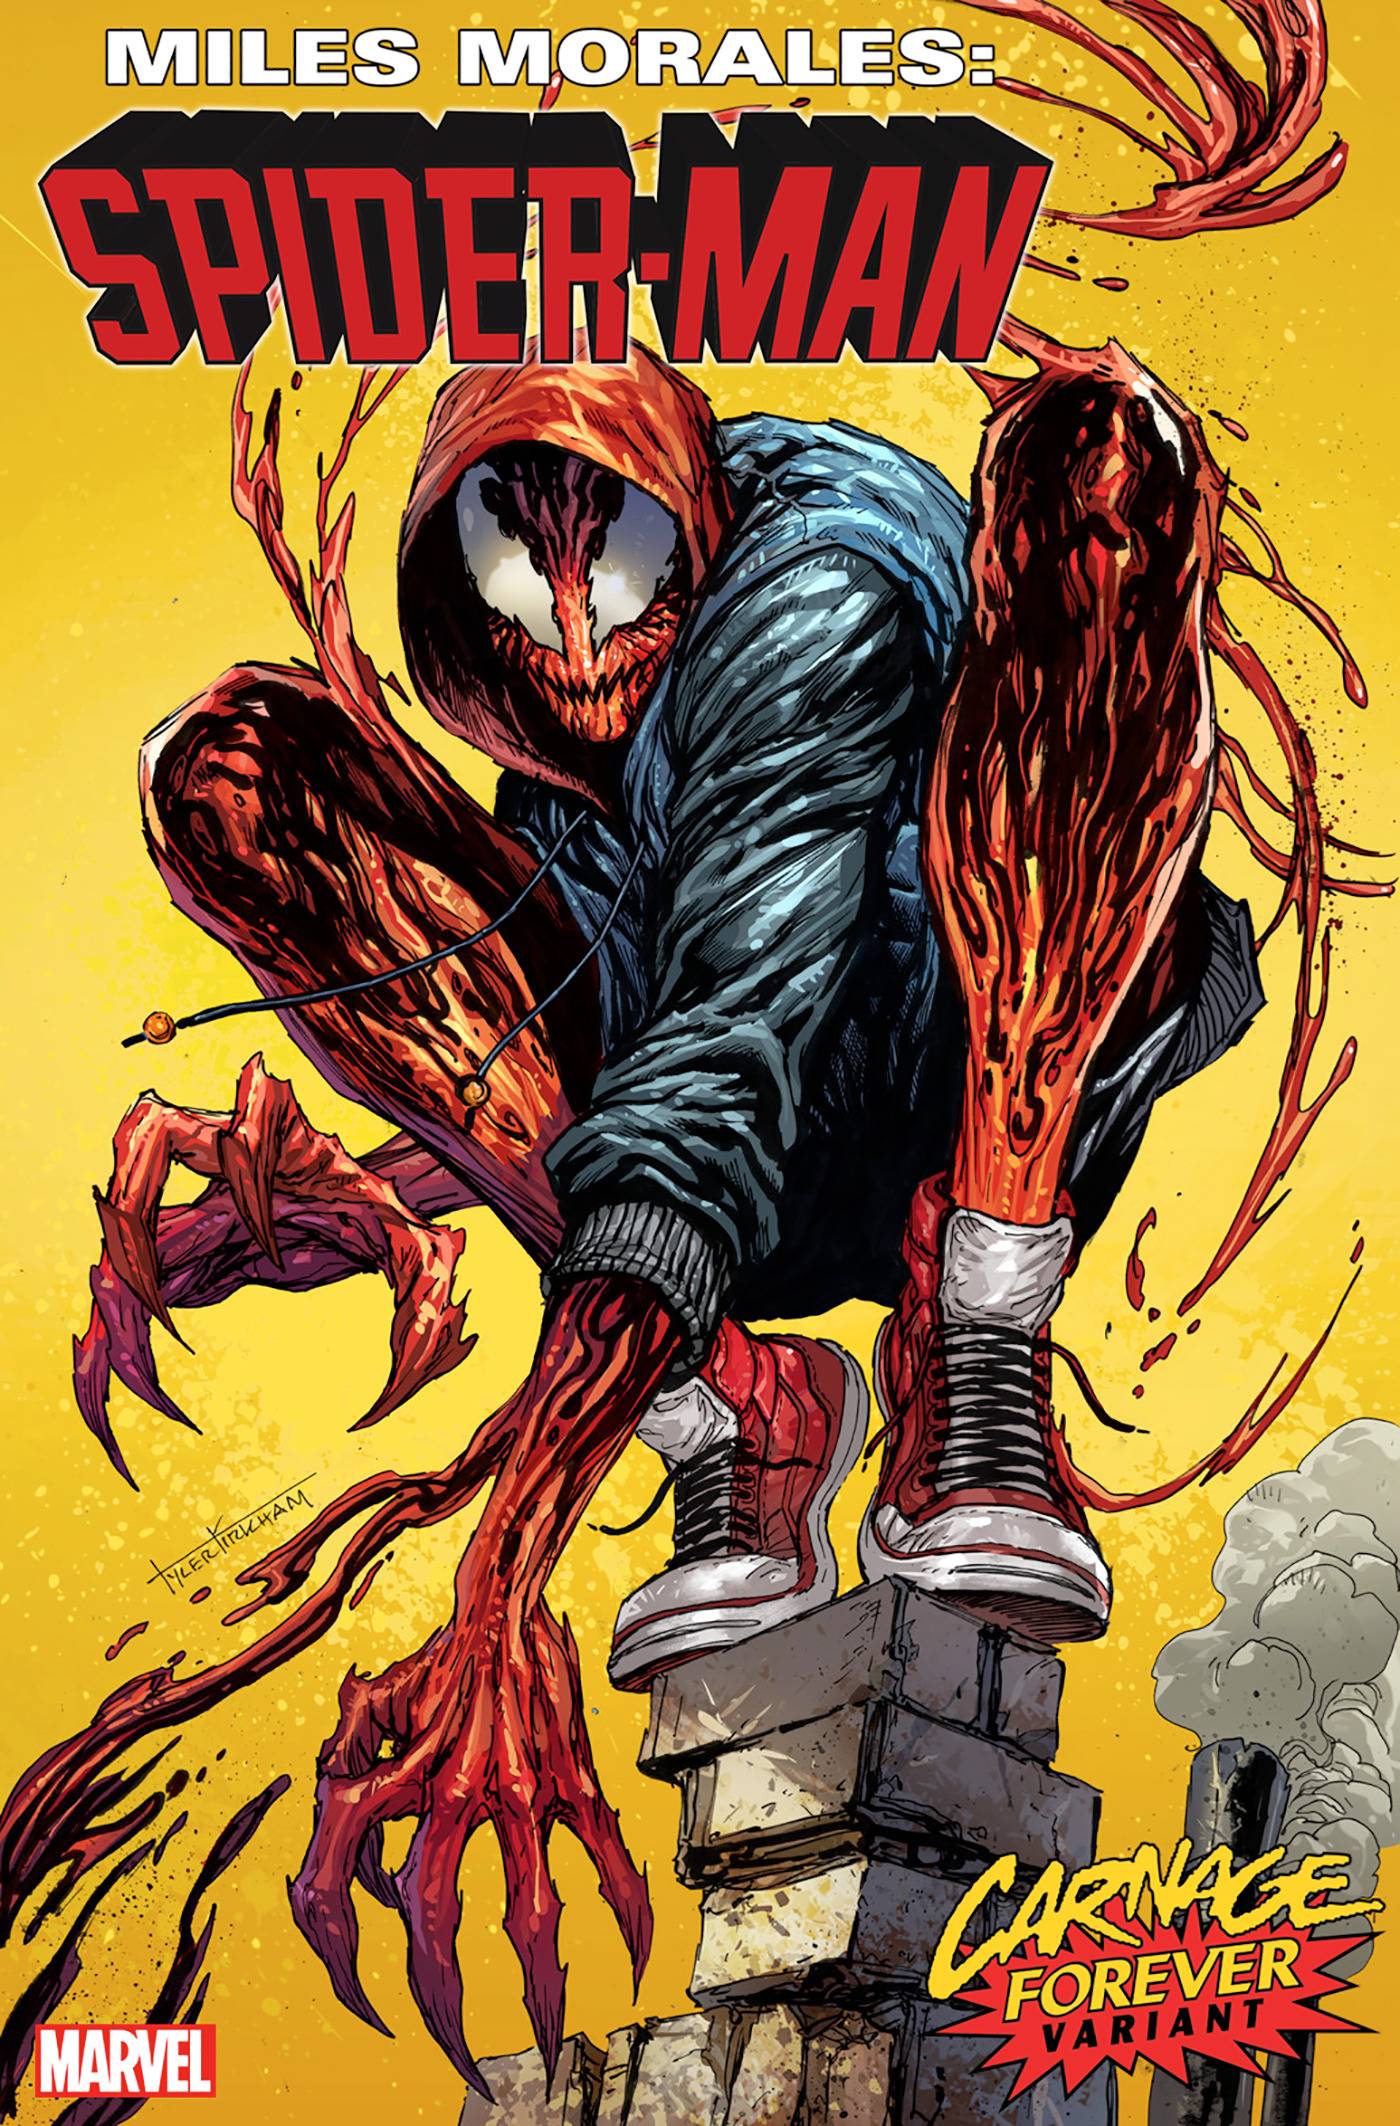 Miles Morales: Spider-Man #36 Kirkham Carnage Forever Variant (2019)